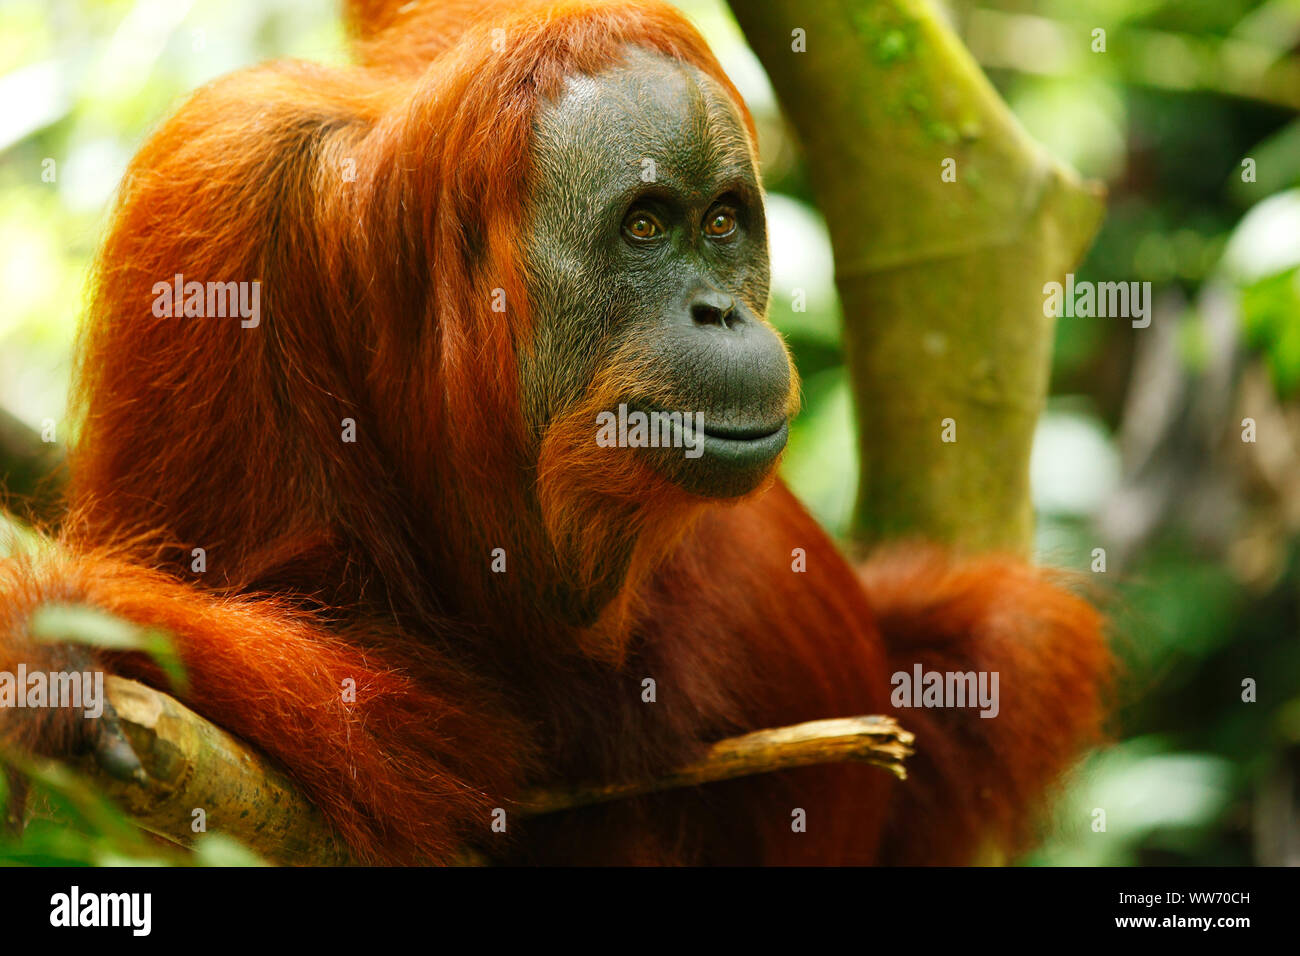 Sumatra, Bukit Lawang, orangutan Stock Photo